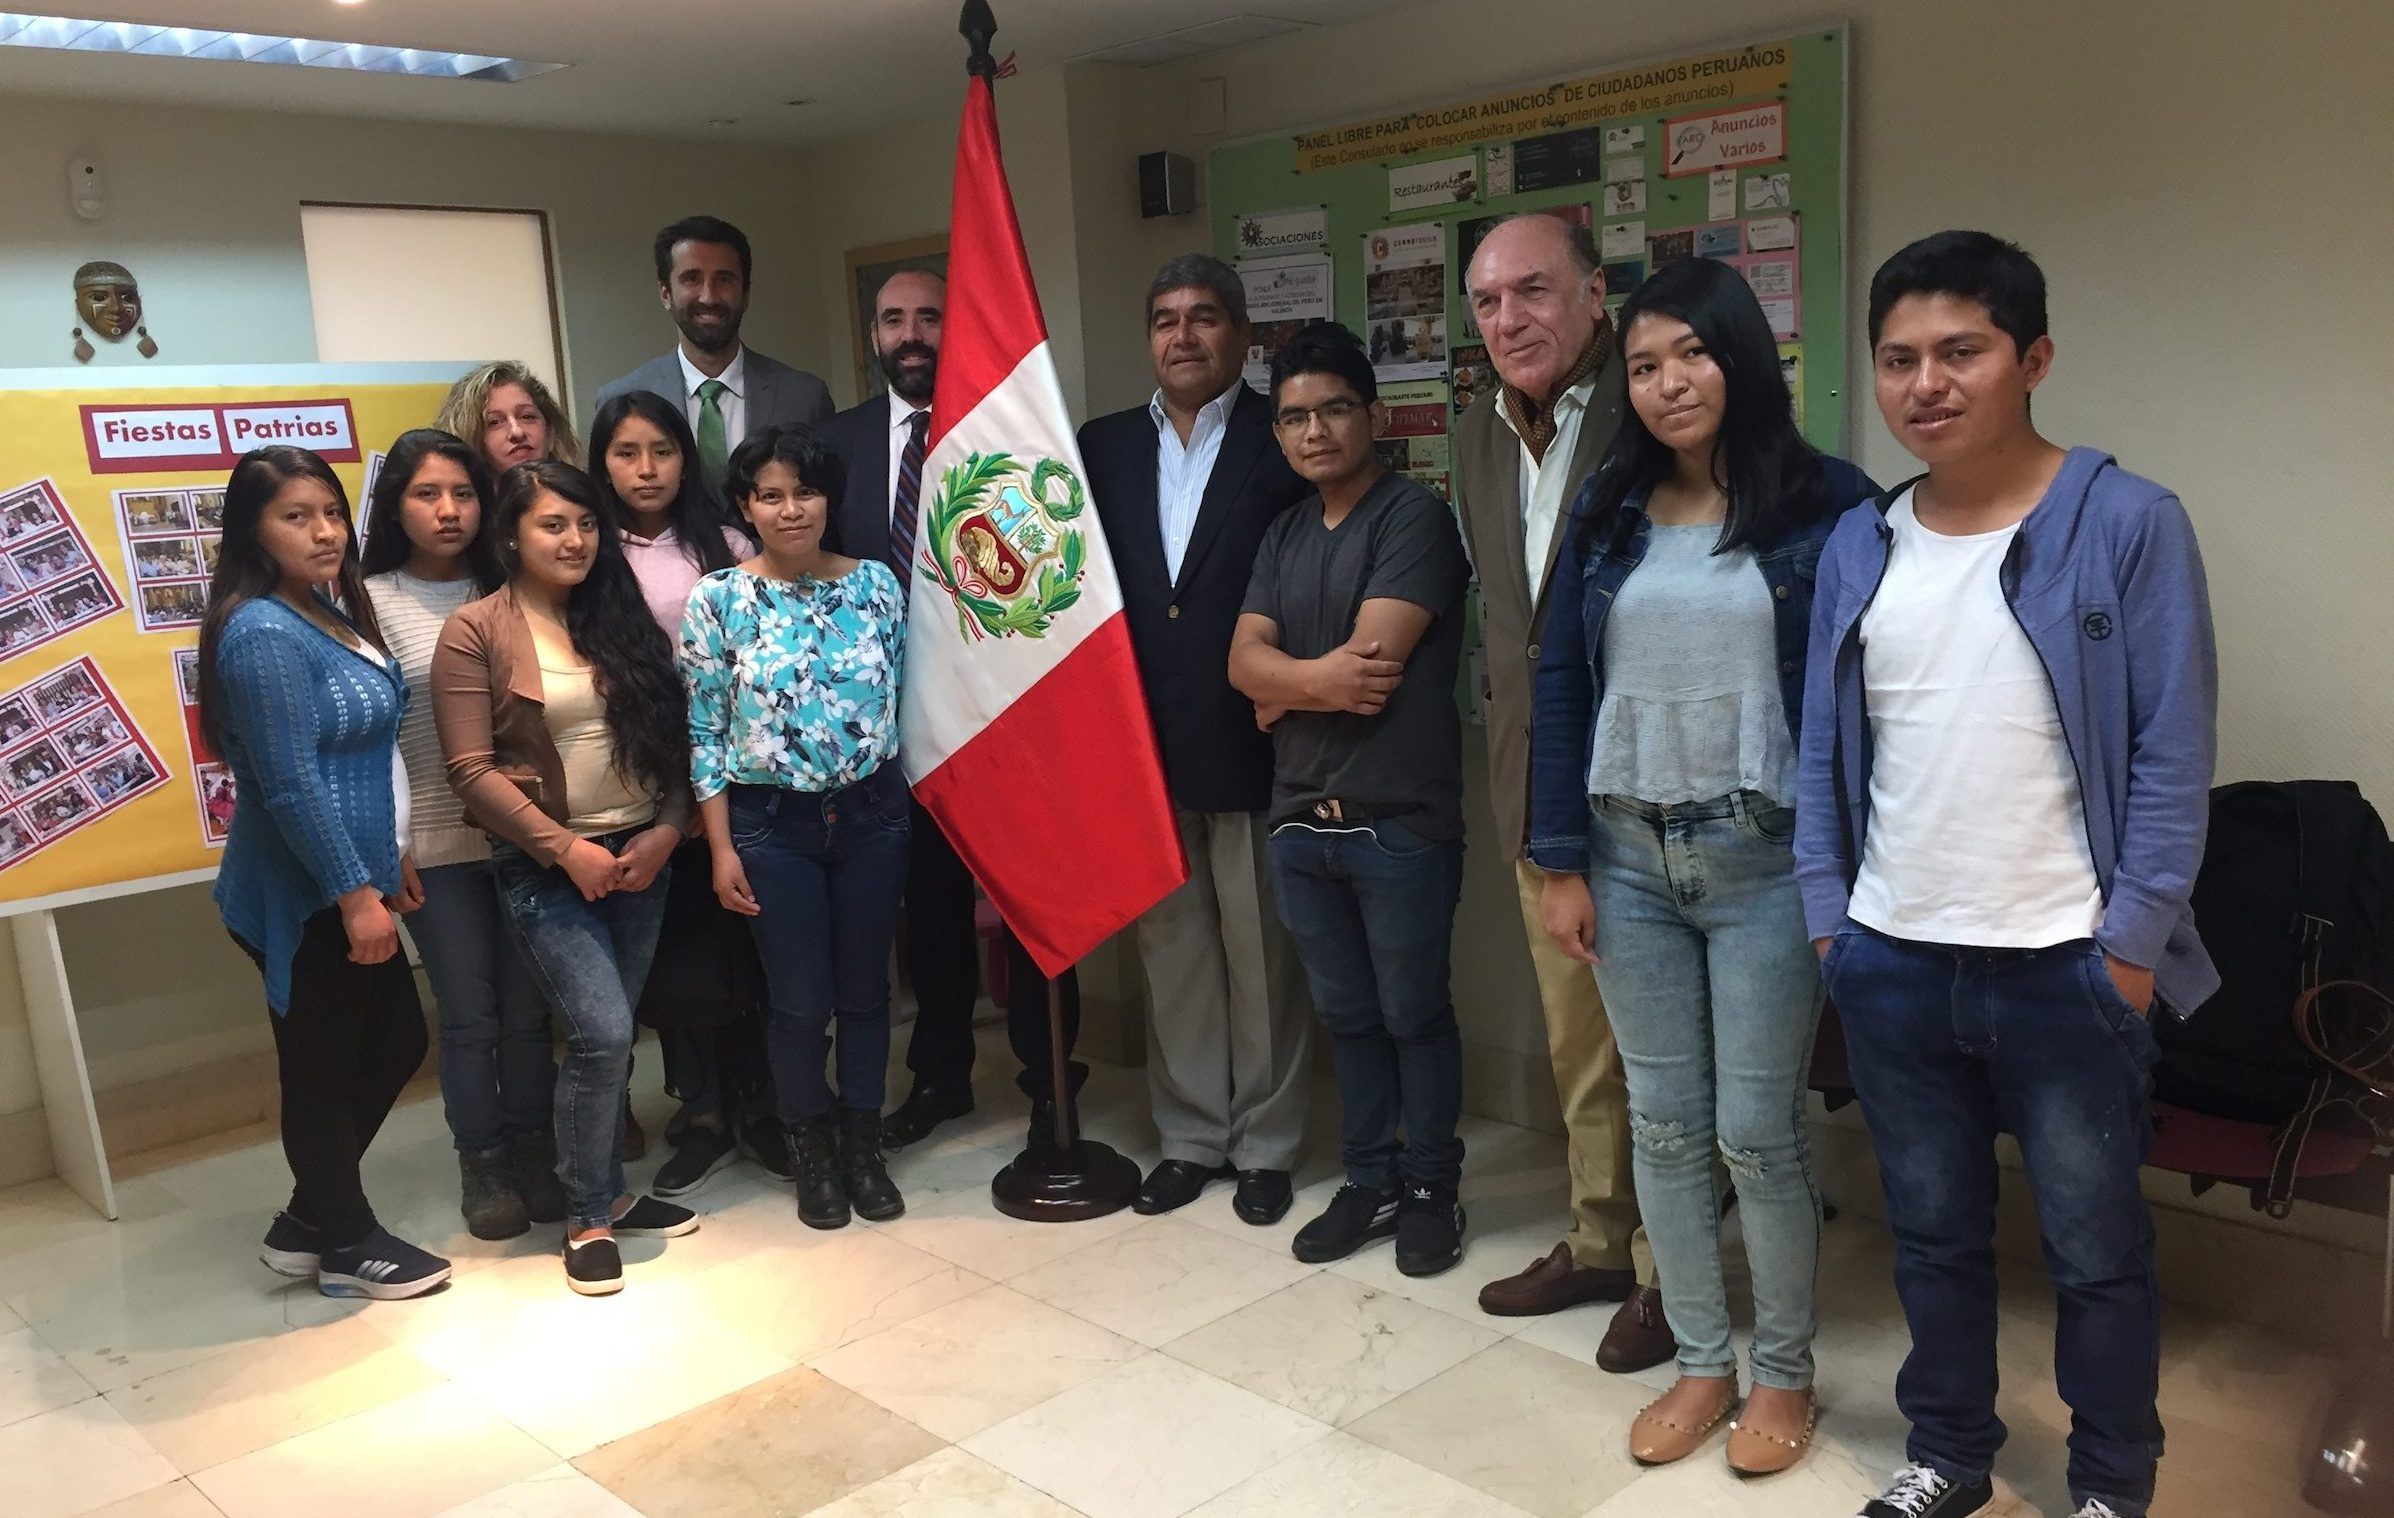 Los estudiantes de Diseño de la CEU UCH becados por el Gobierno de Perú, junto a representantes de la Universidad y el consulado peruano en Valencia.